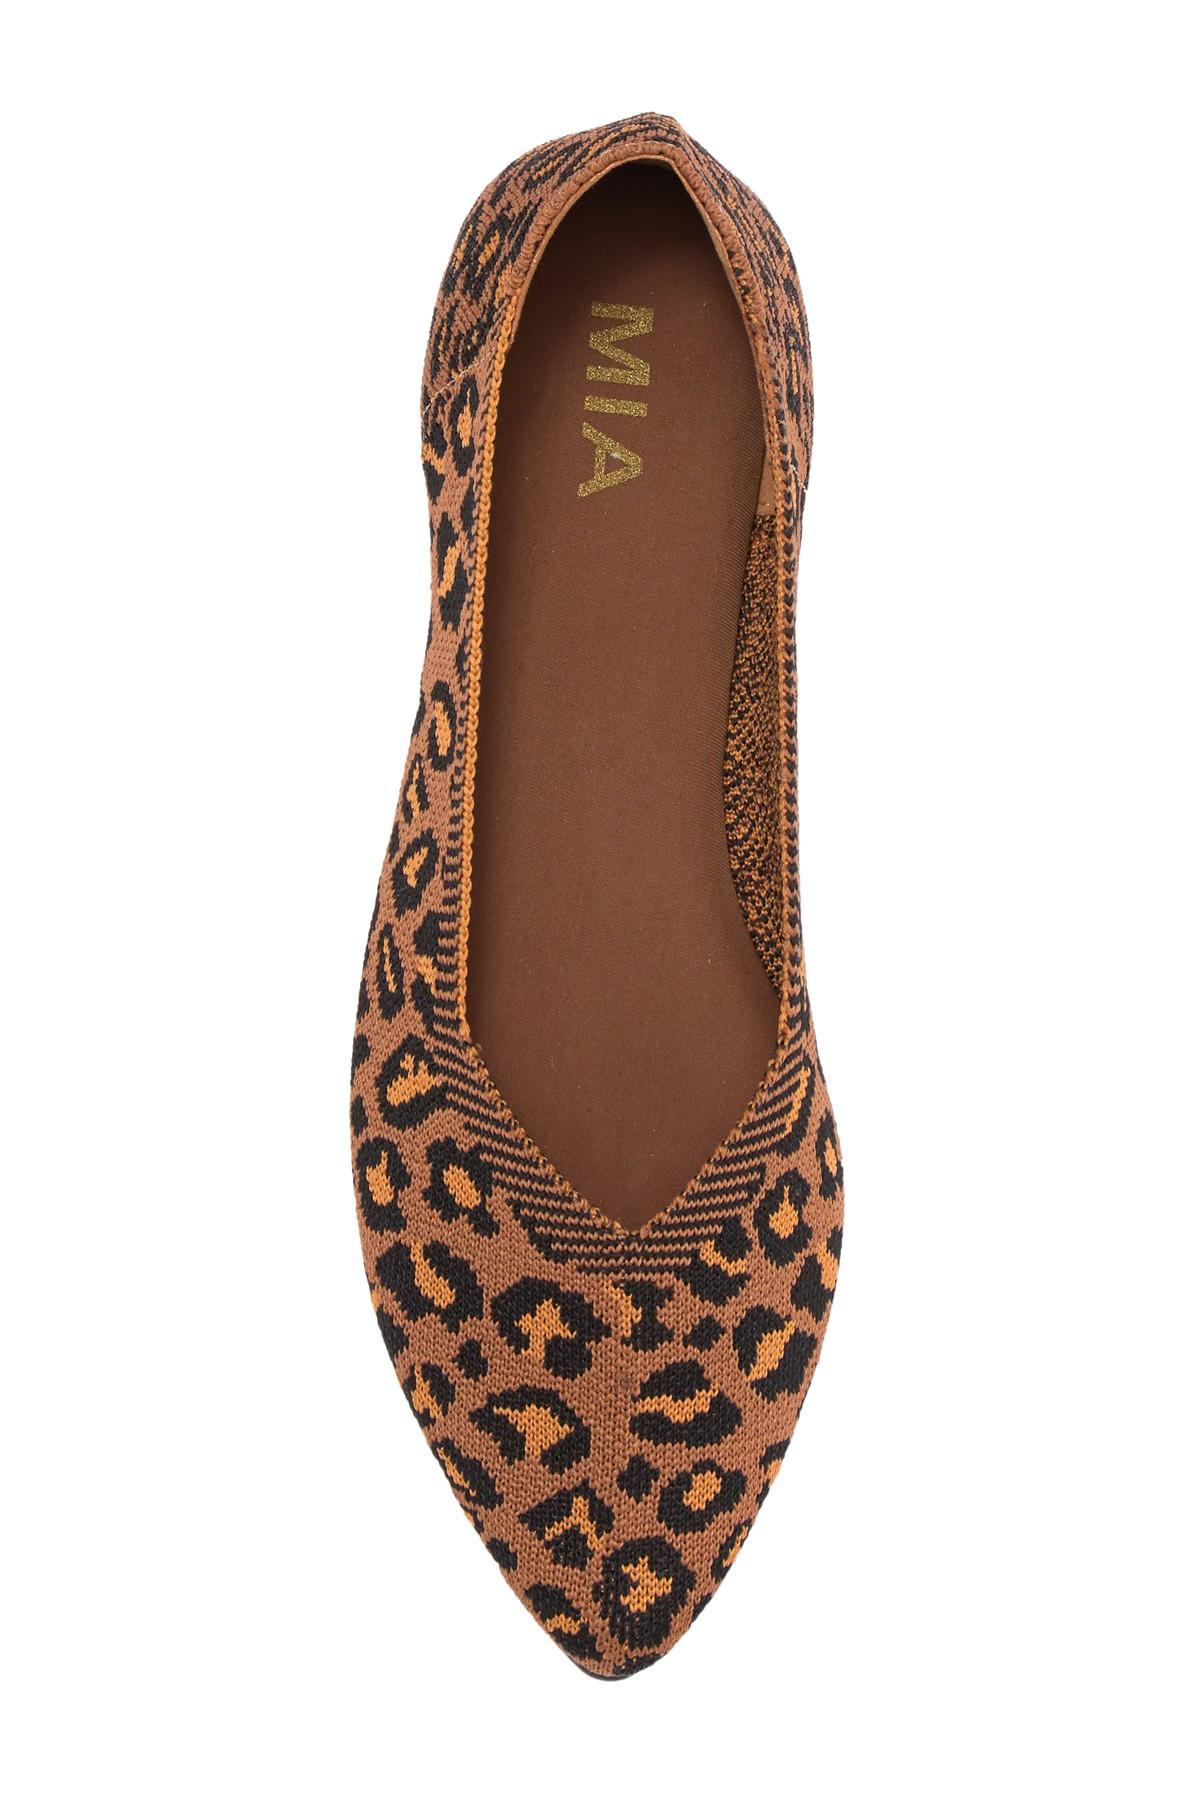 MIA Kerri Pointed Toe Fly Knit Flat in Leopard pr (Brown) - Lyst